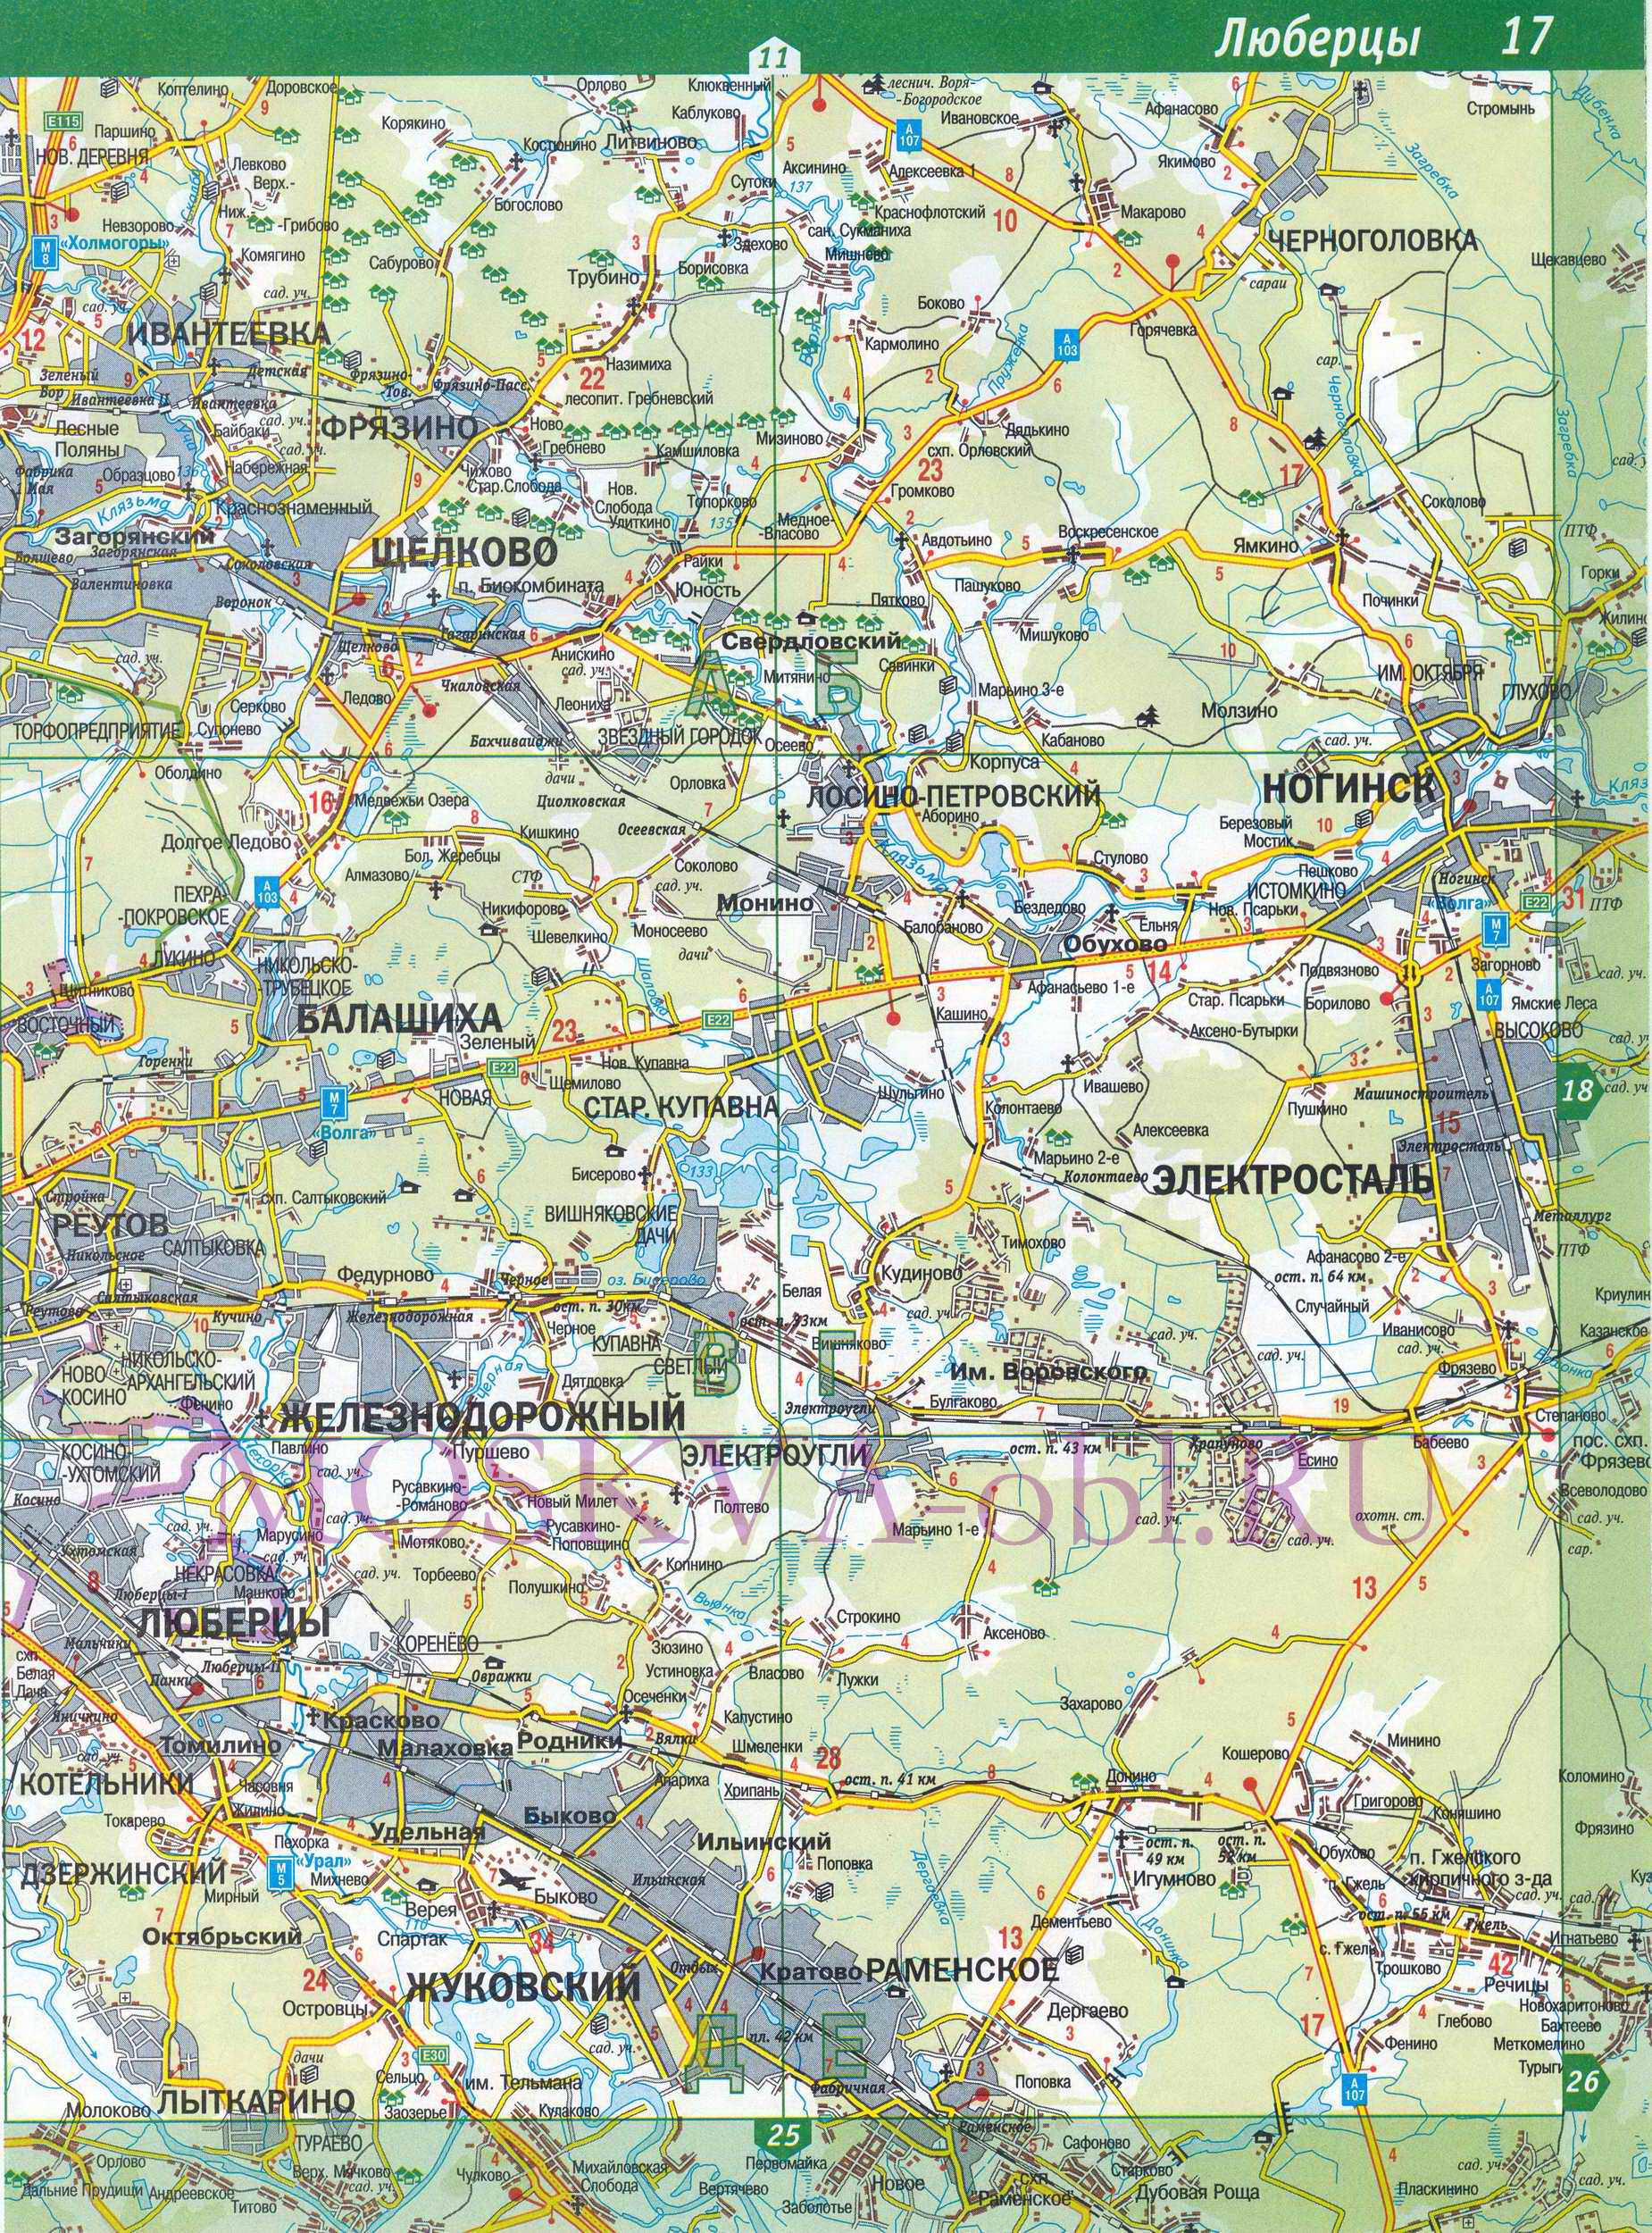 Карта Подмосковья - Люберецкий район Московской области